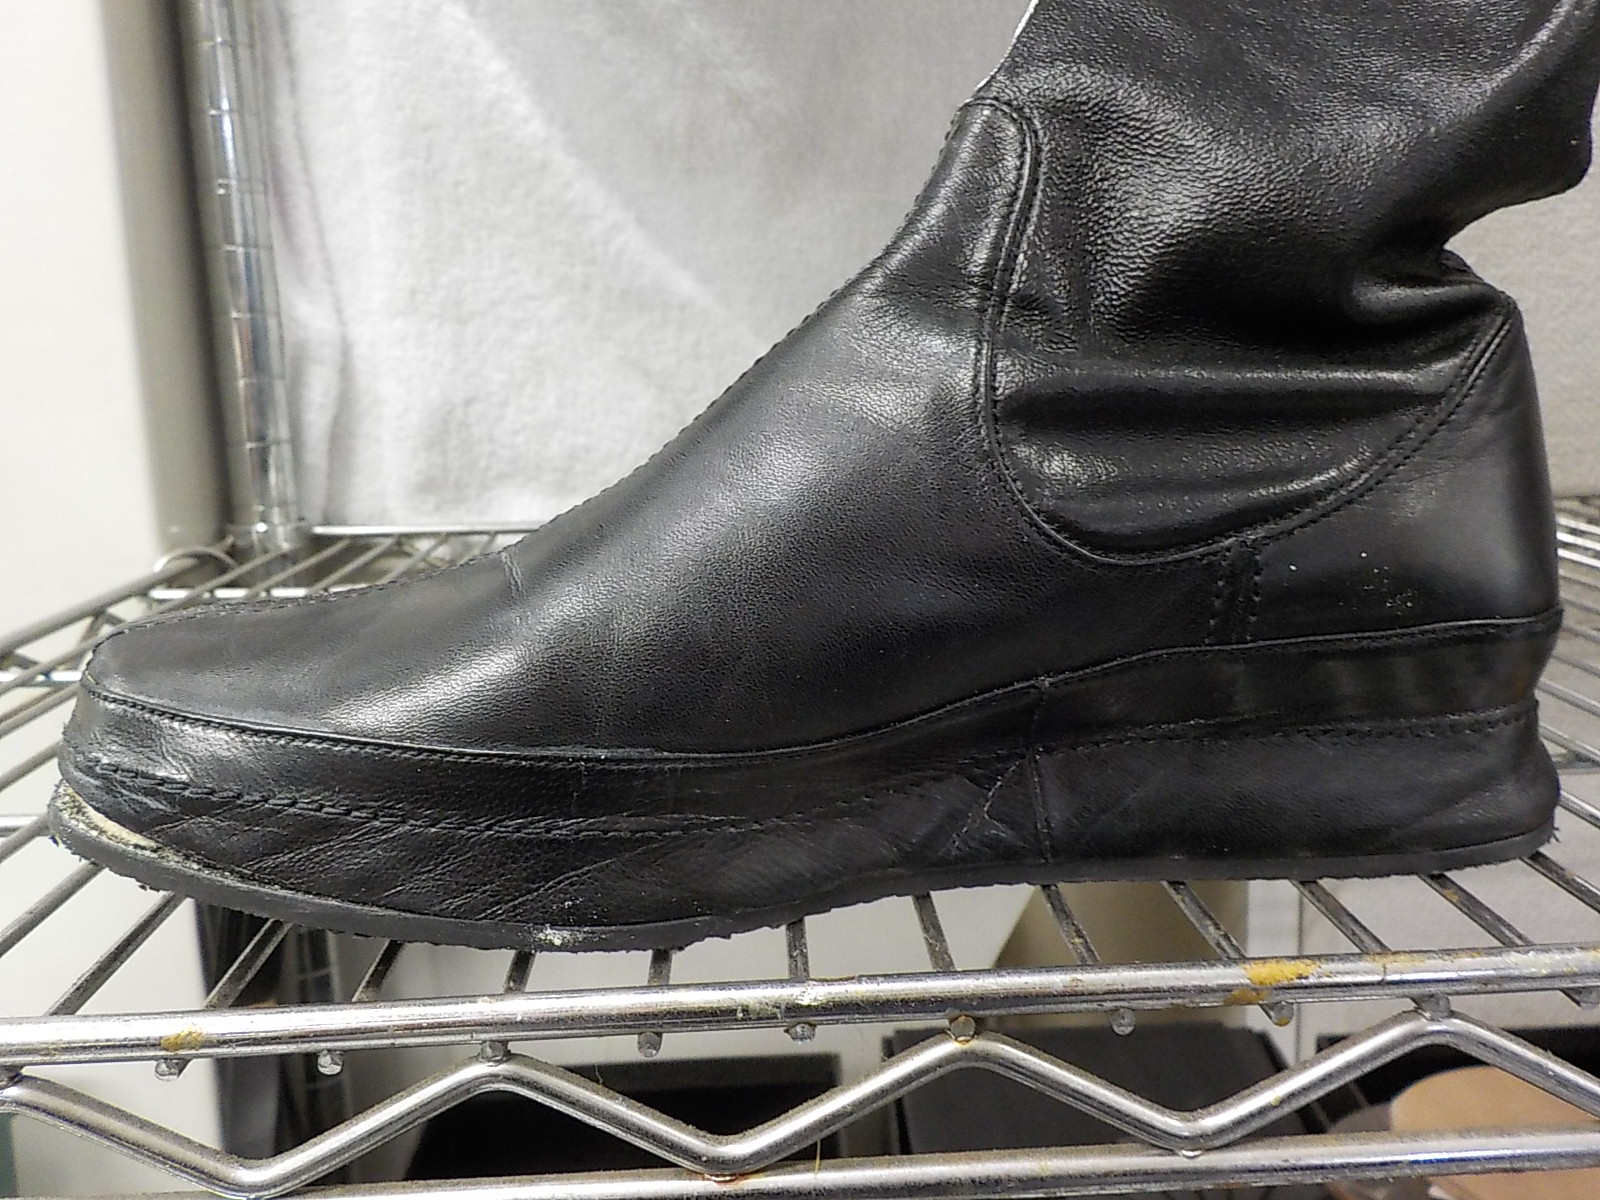 靴内部のウレタンが経年劣化でポロポロ お気に入りの靴をオールソール修理で復活 Bluebronze ブルーブロンズ 靴修理 靴 クリーニング オーダーメイドシューズ等取り扱っています